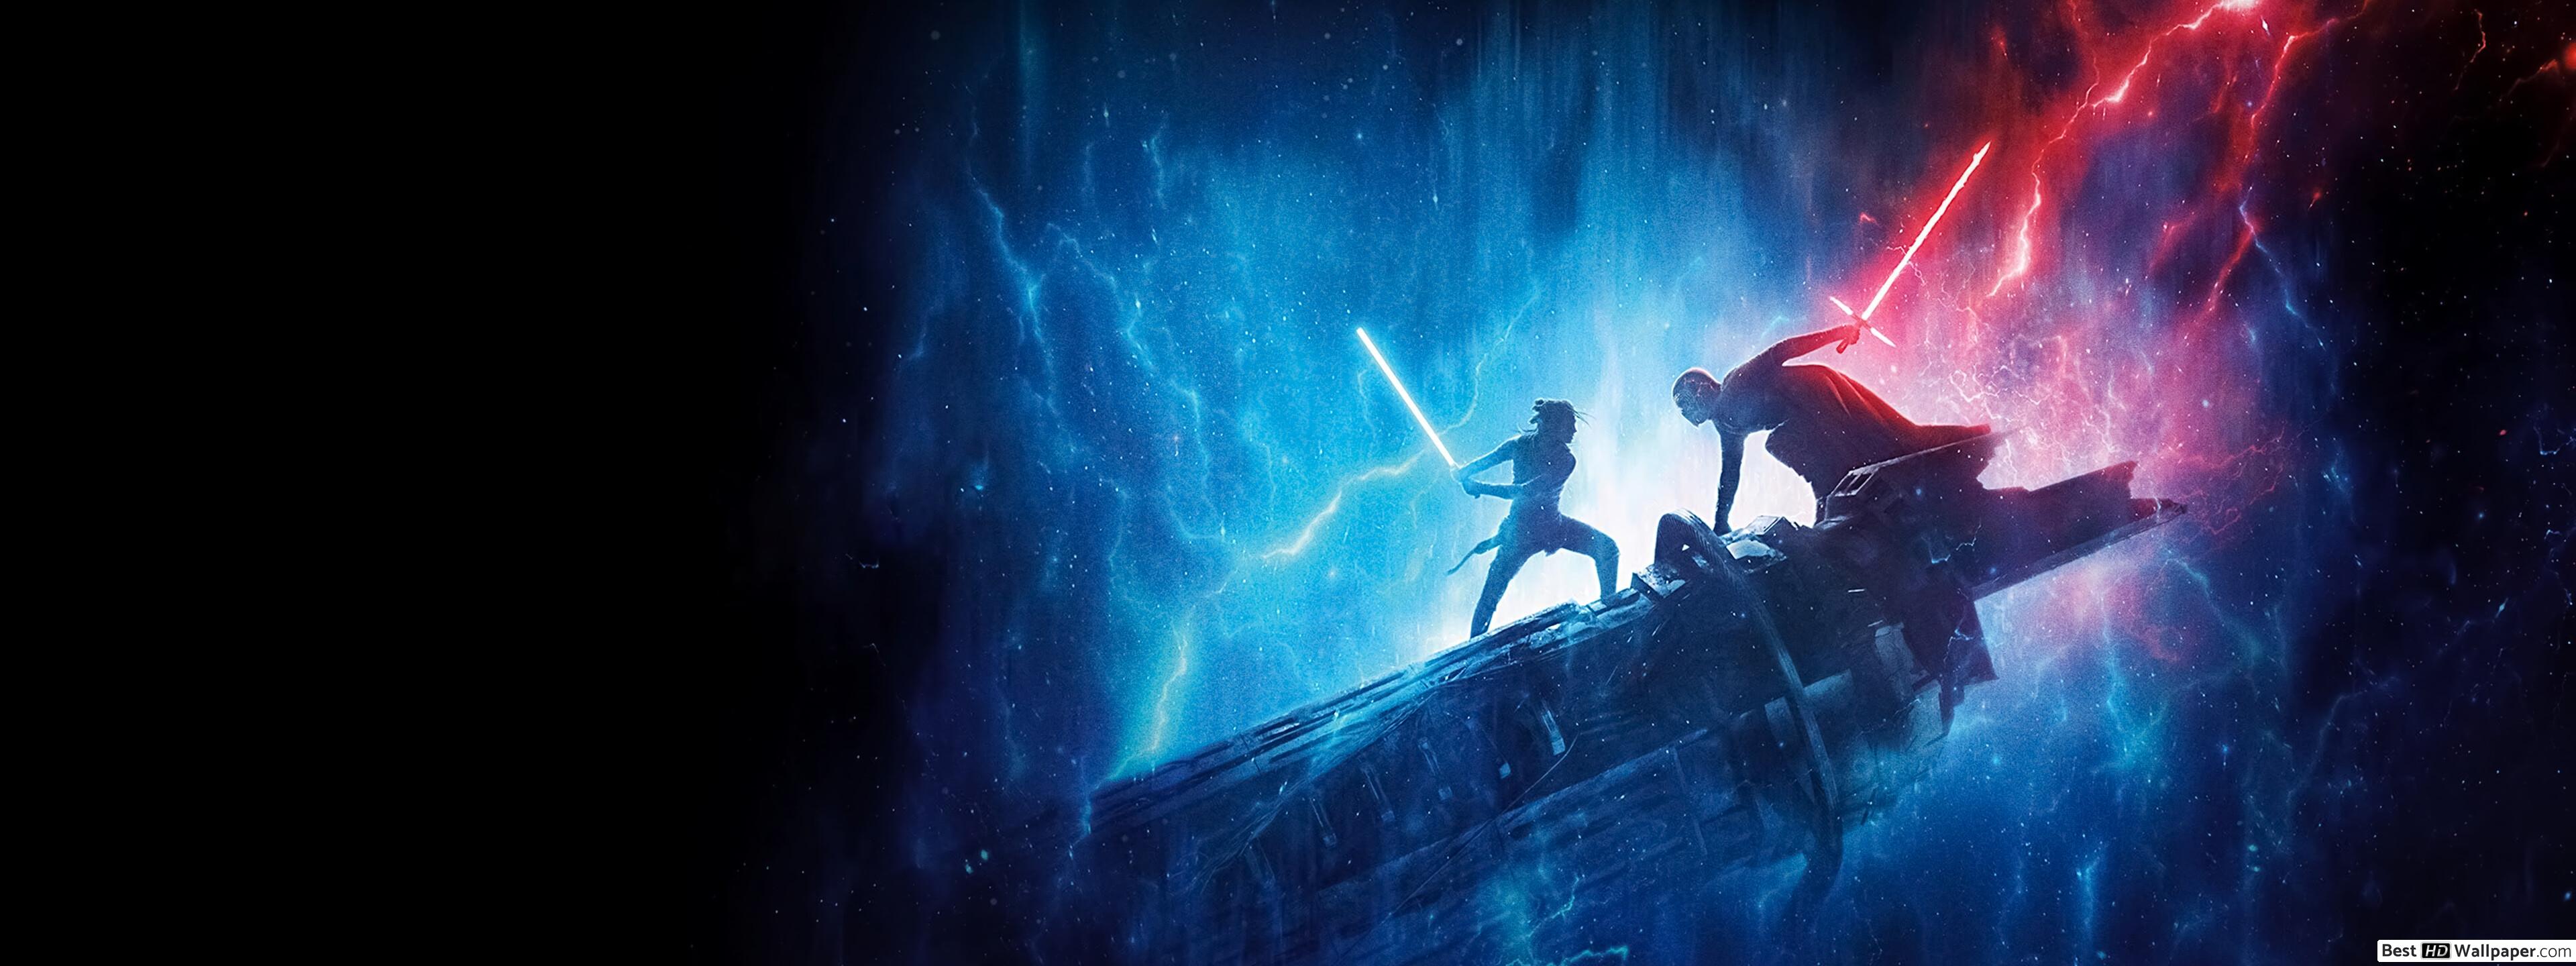 Star wars, Rey's blue lightsaber vs, Kylo Ren's red lightsaber HD wallpaper download